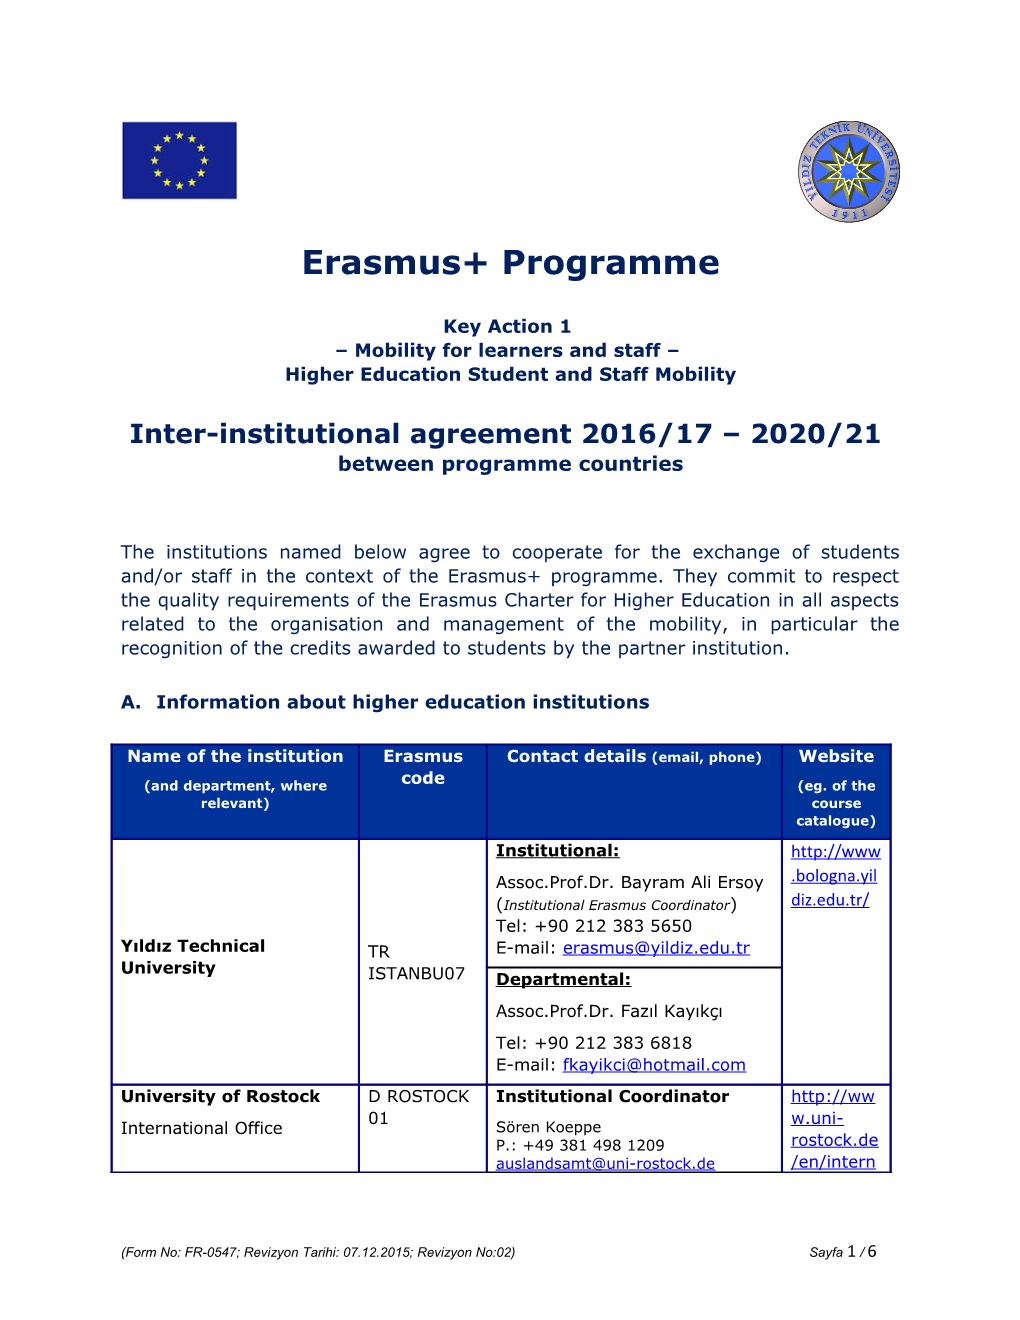 Erasmus+ Programme s3